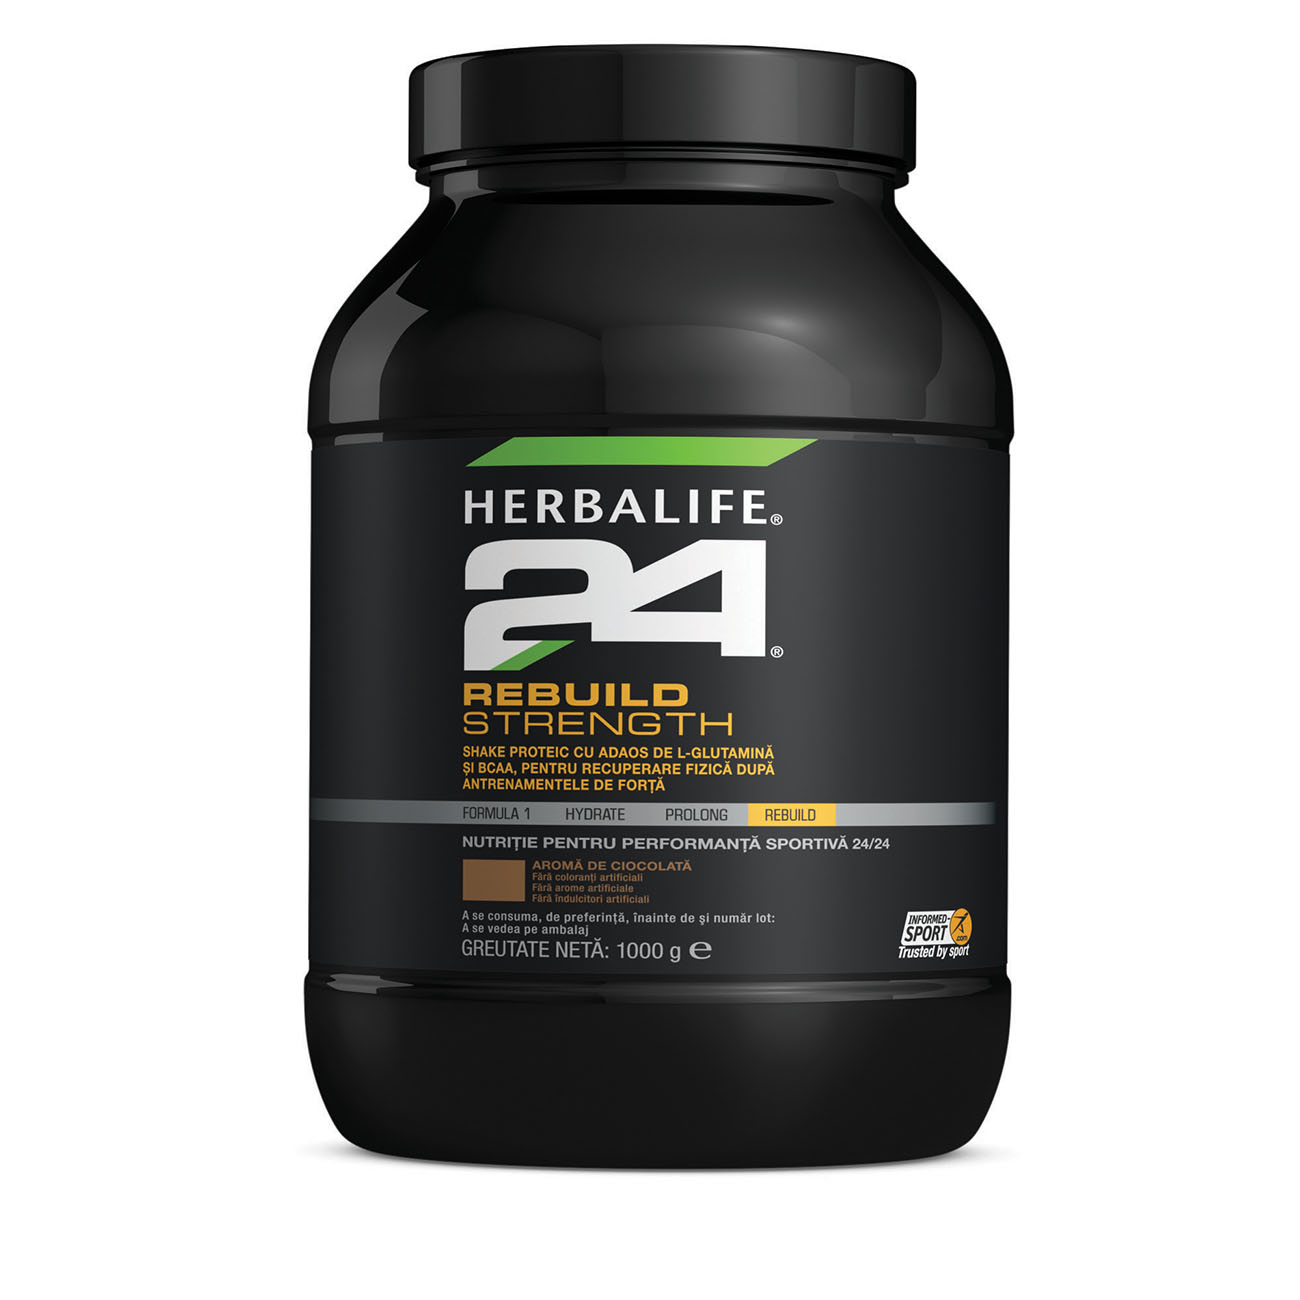 Herbalife24® Rebuild Strength Băutură proteică Ciocolată product shot